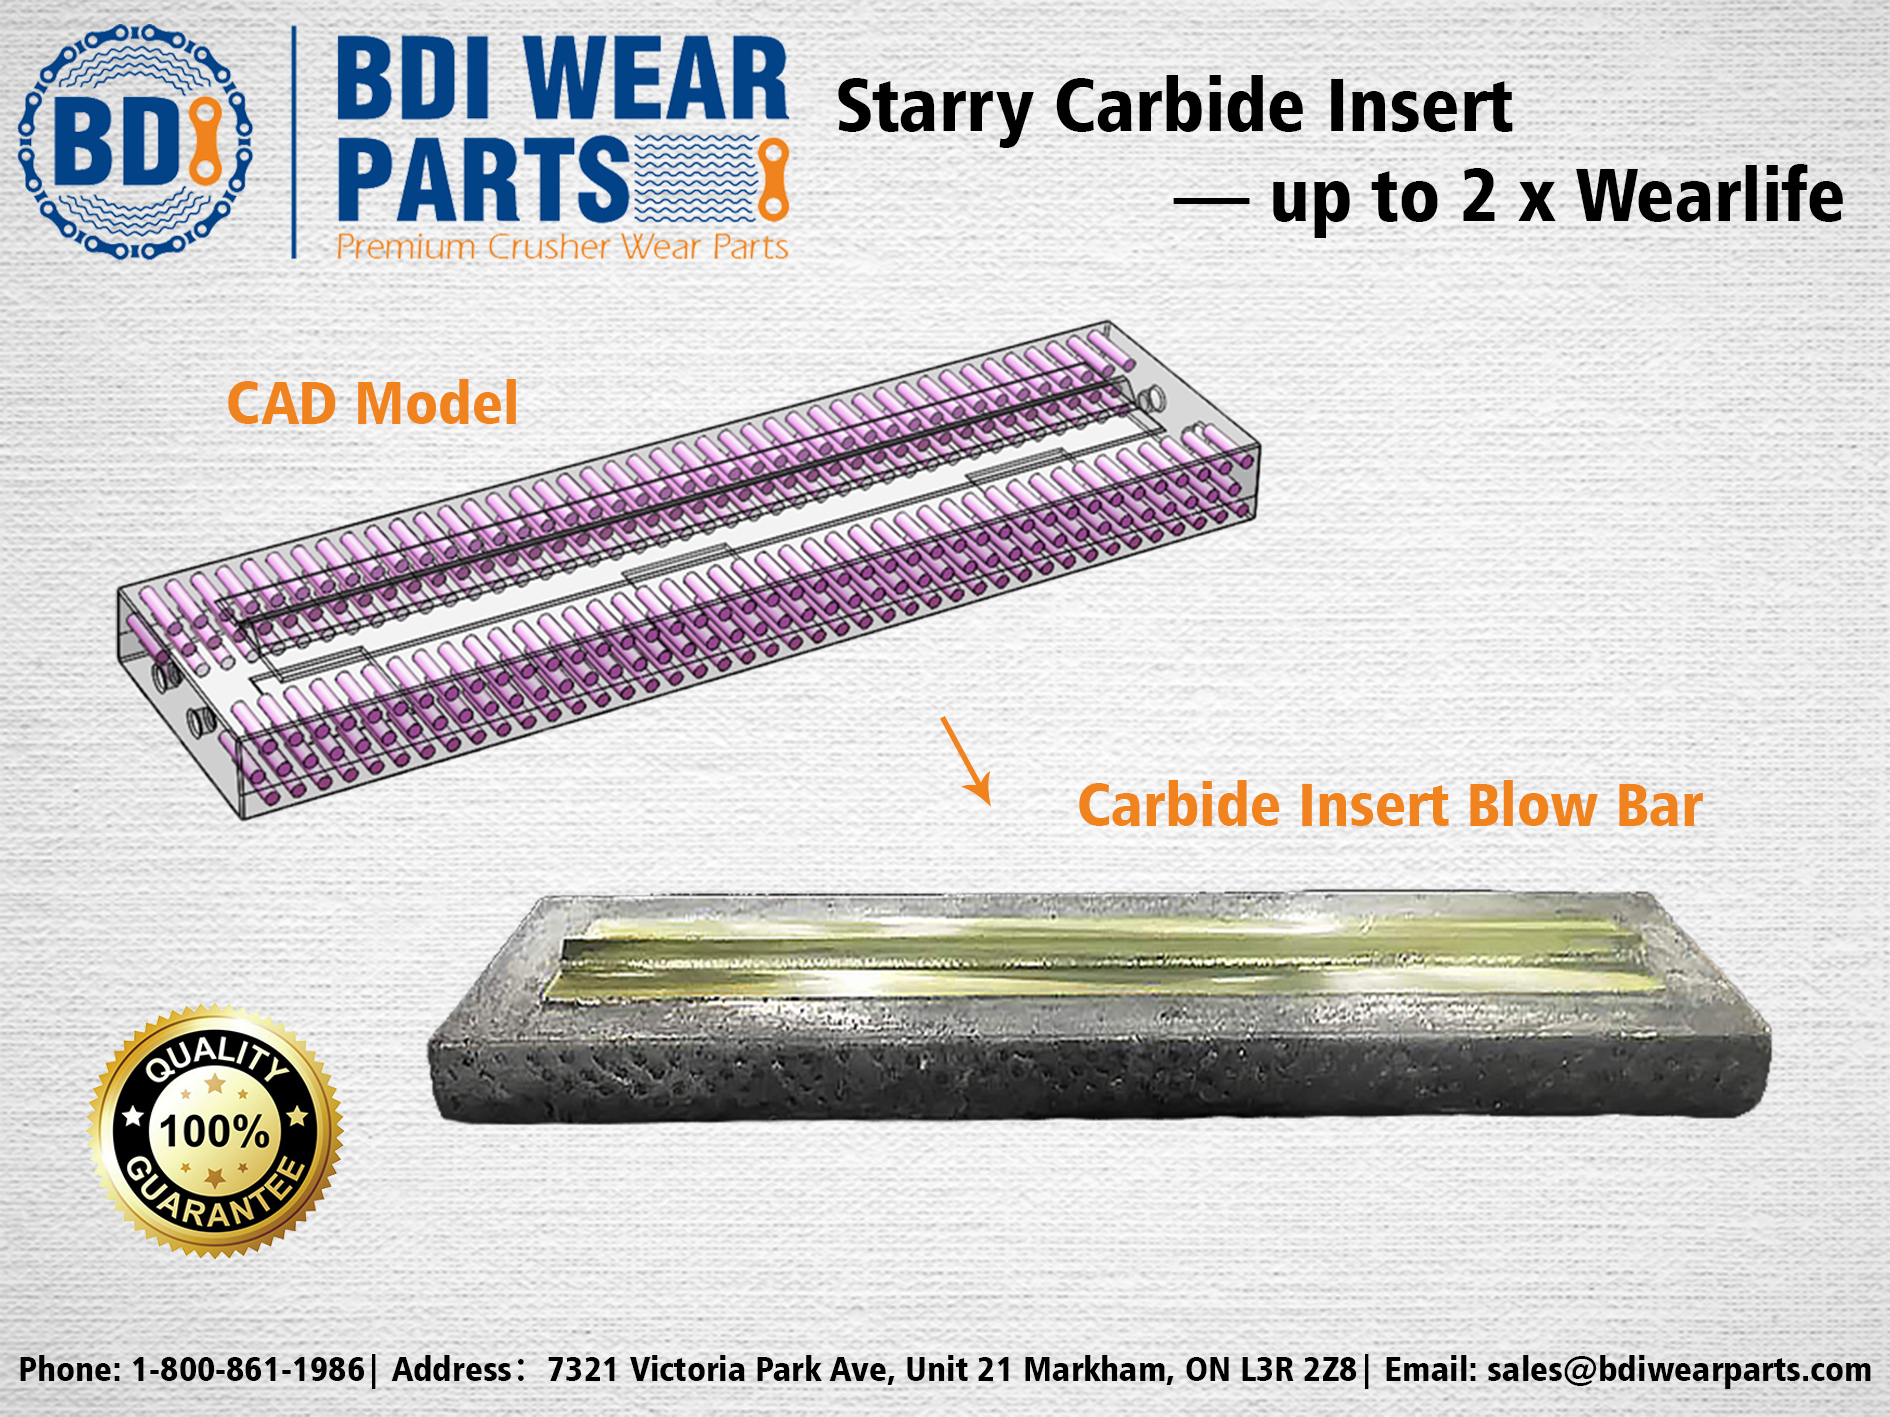 Starry Carbide Insert Blow Bar